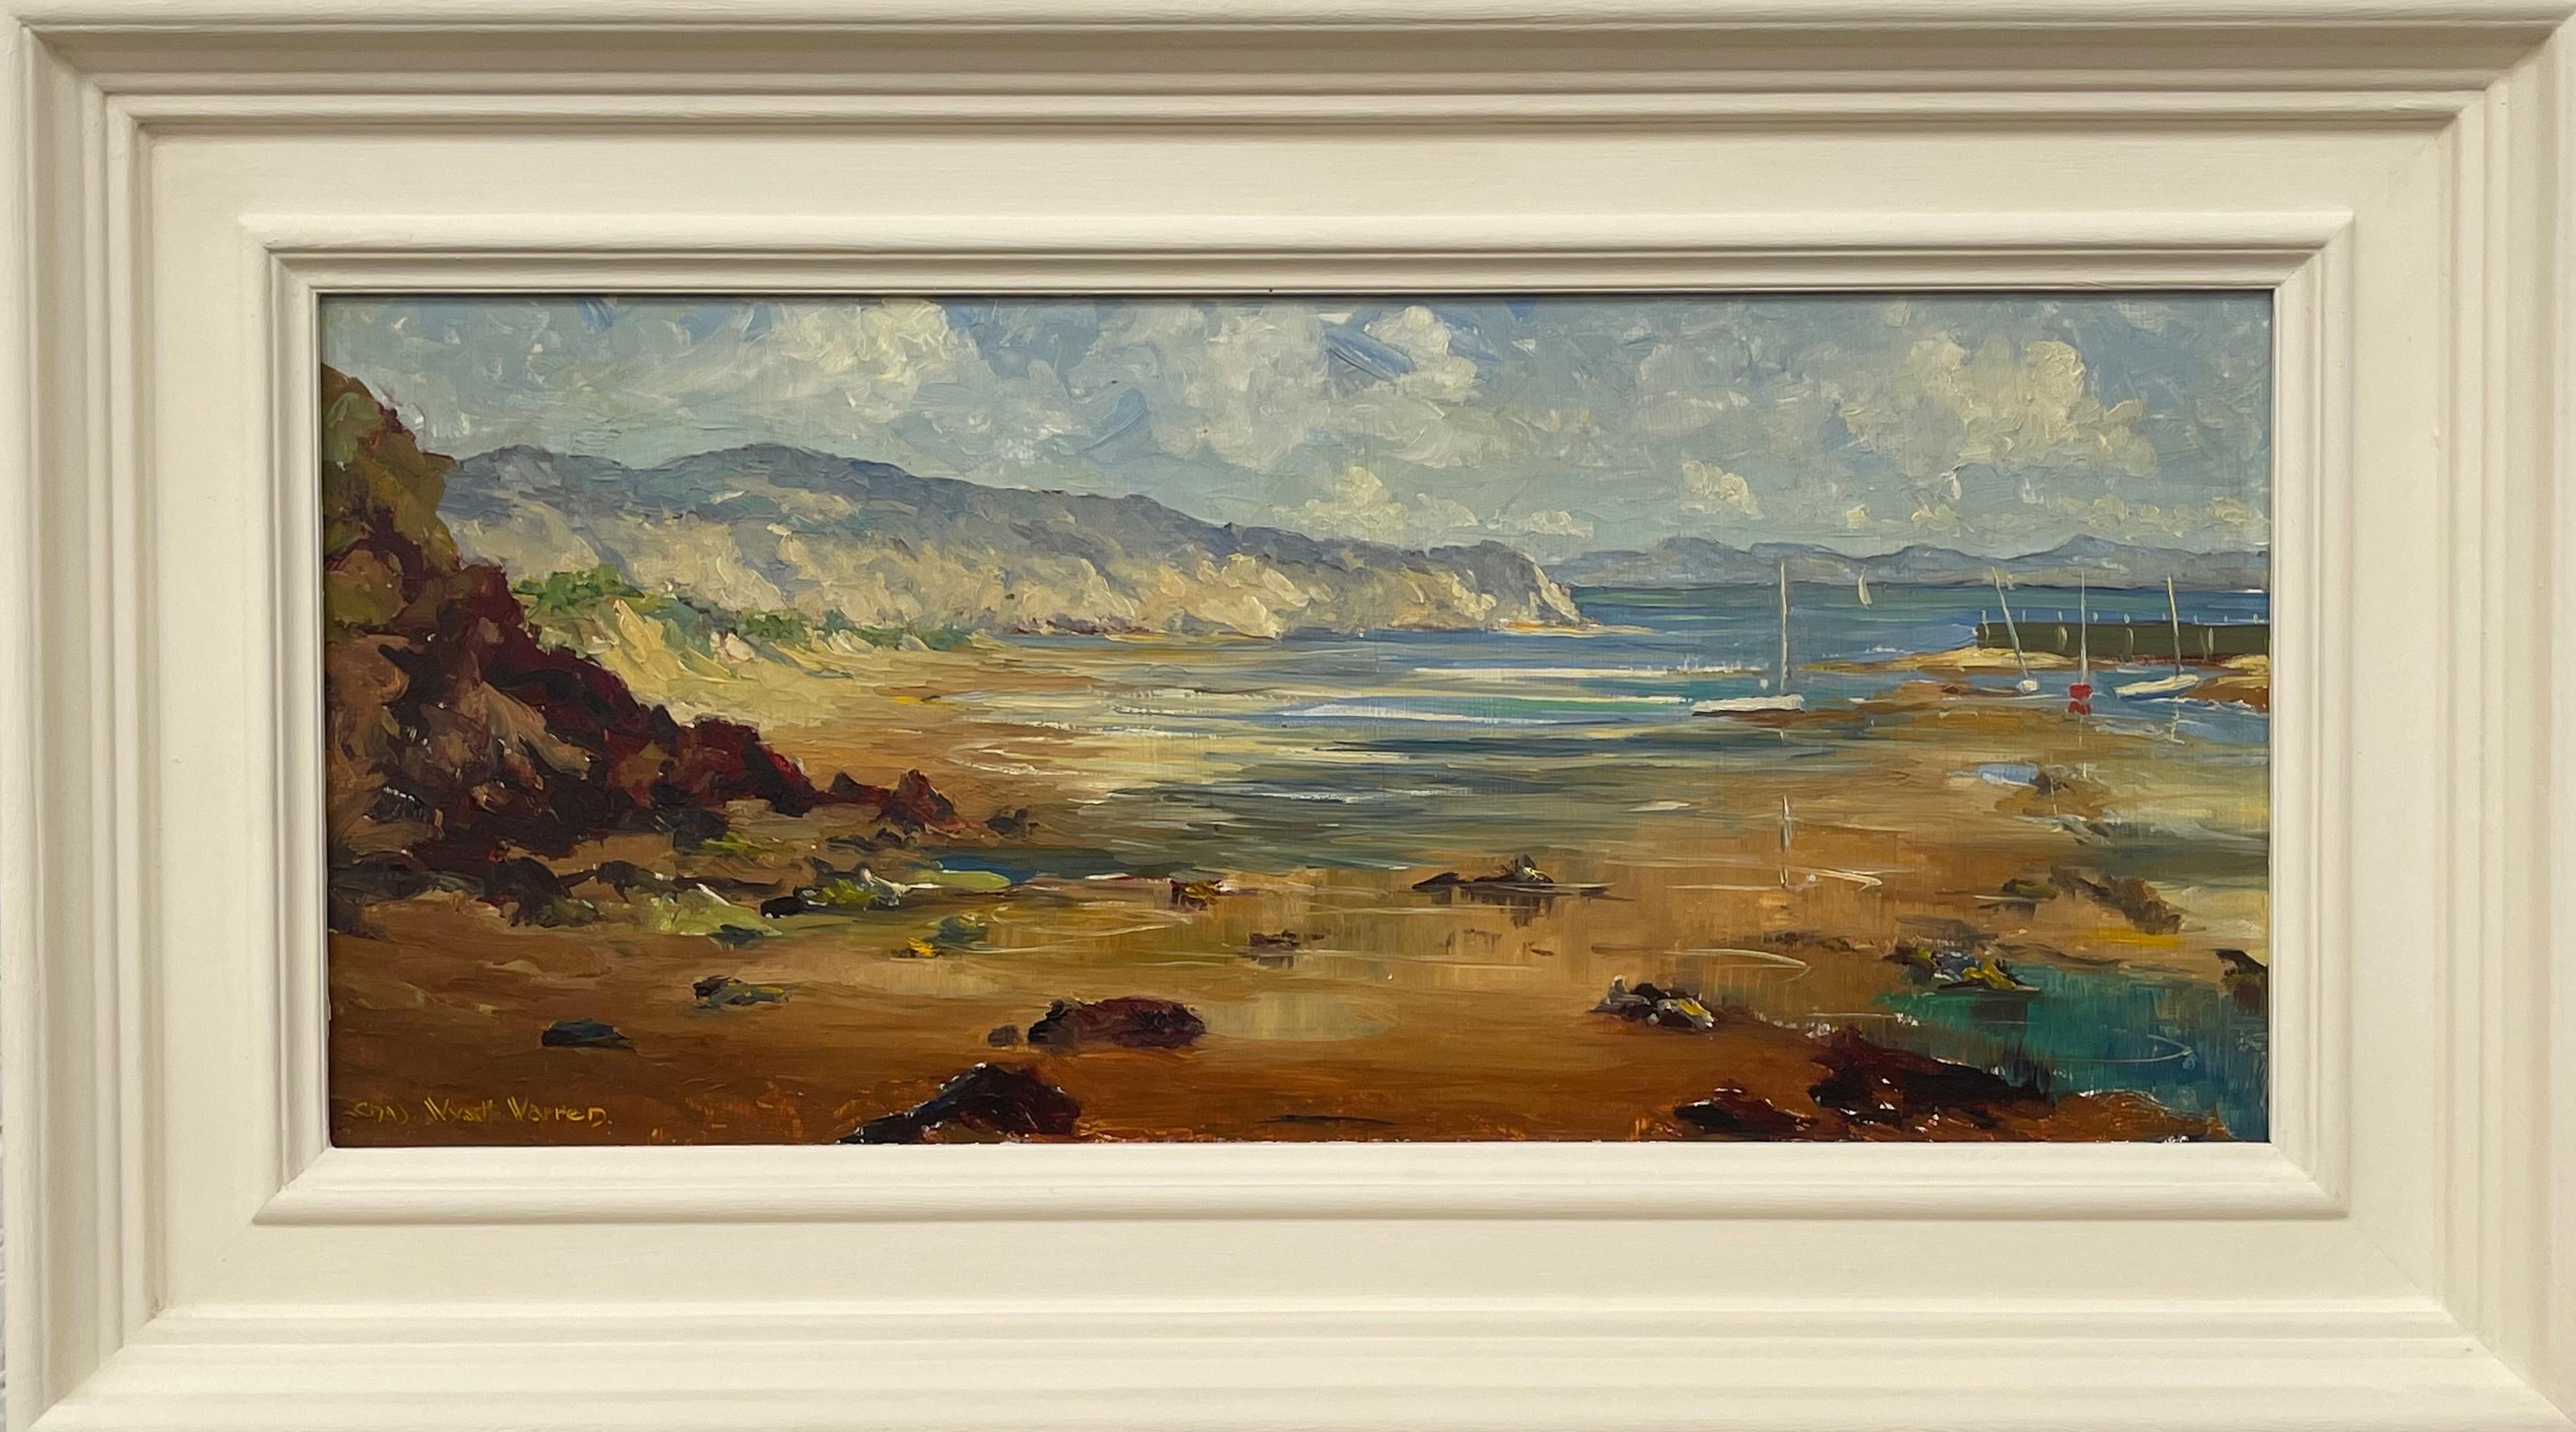 Peinture à l'huile Impasto d'une scène portuaire au Pays de Galles par un artiste britannique du 20e siècle